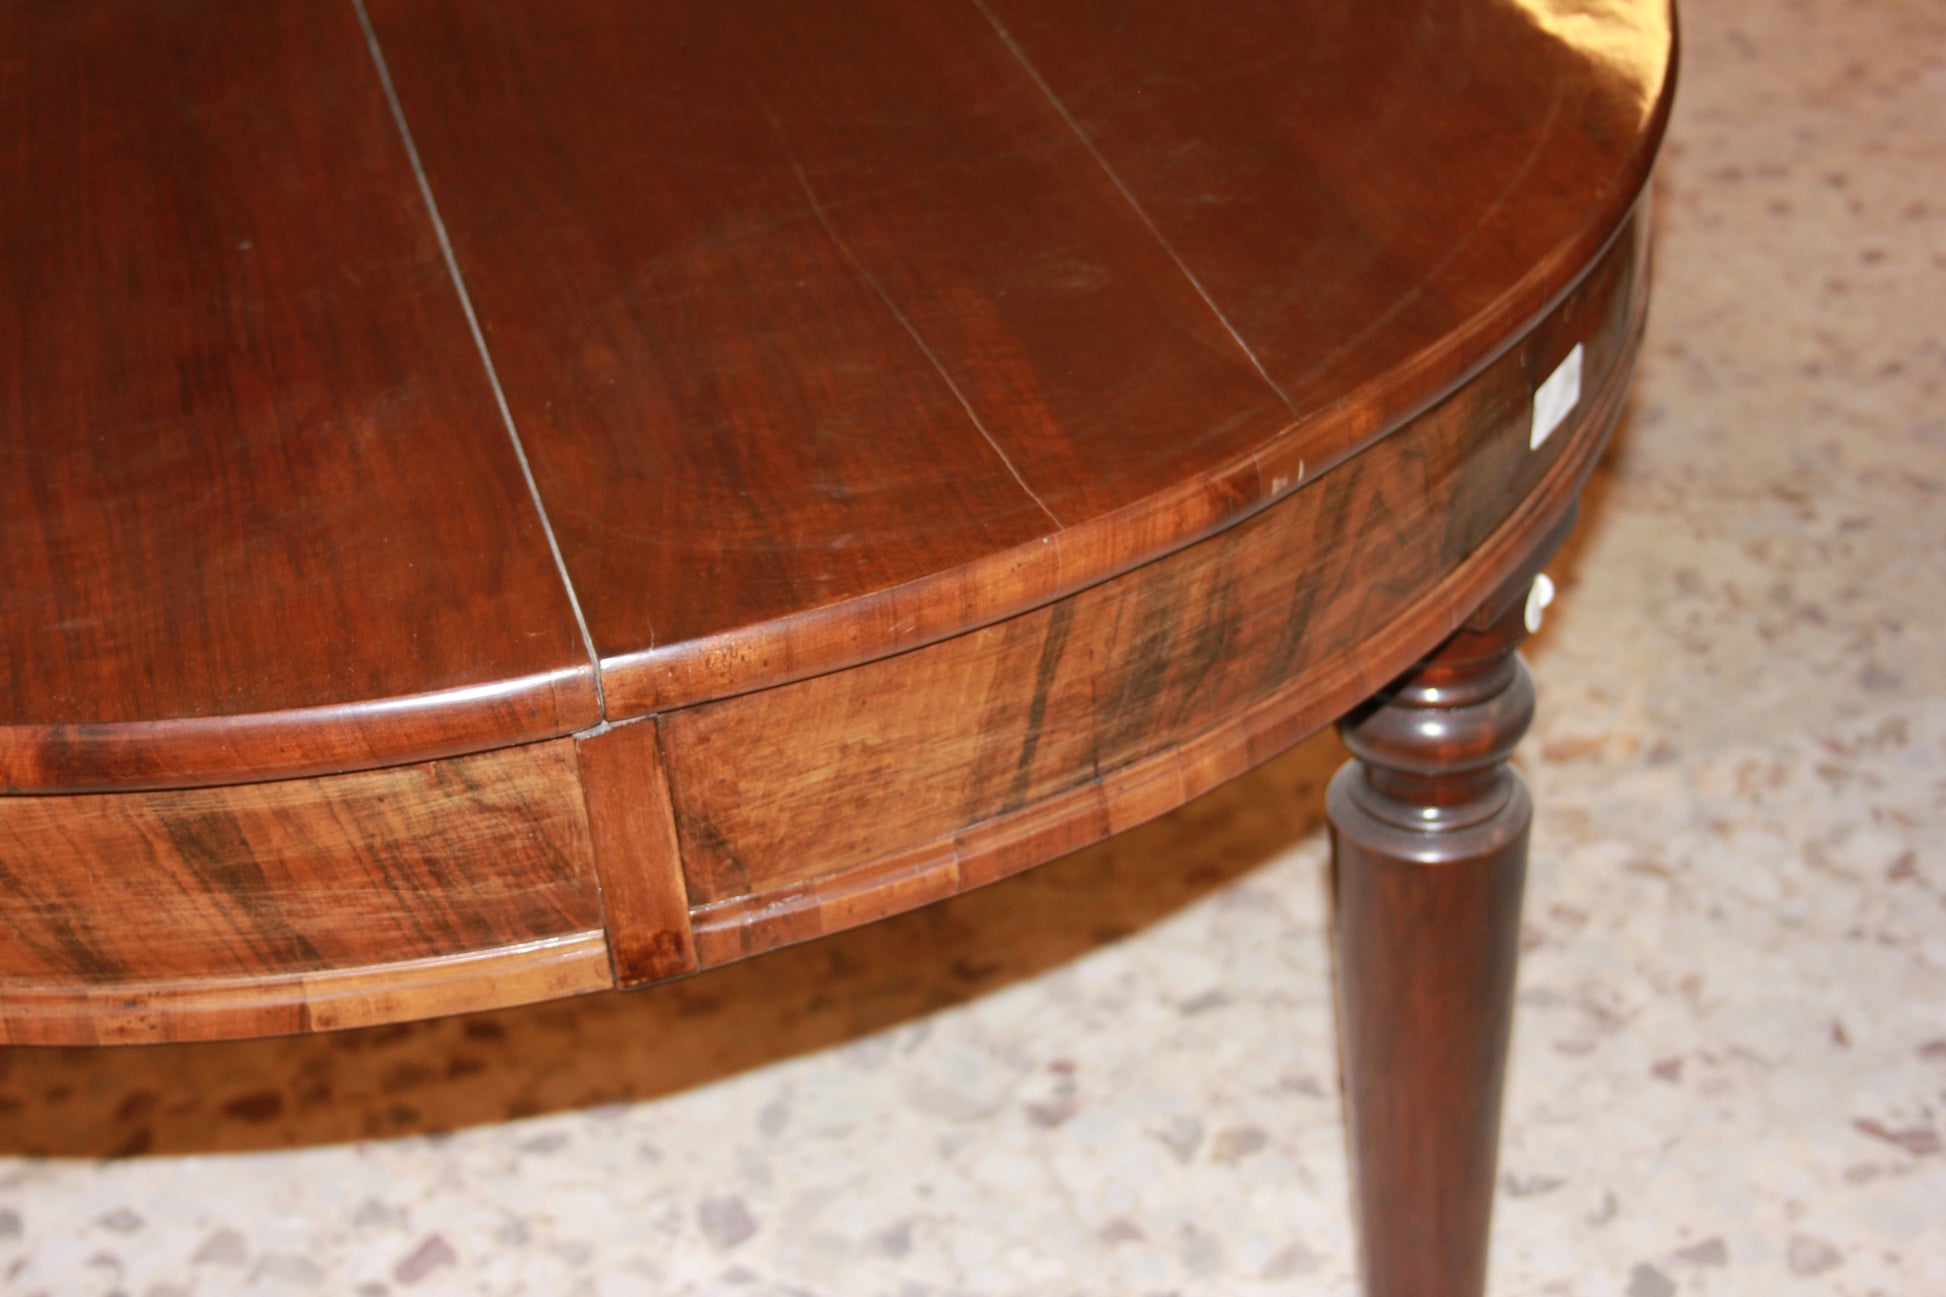 Tavolo circolare allungabile in legno di noce fiammato stile Luigi Filippo del 1800